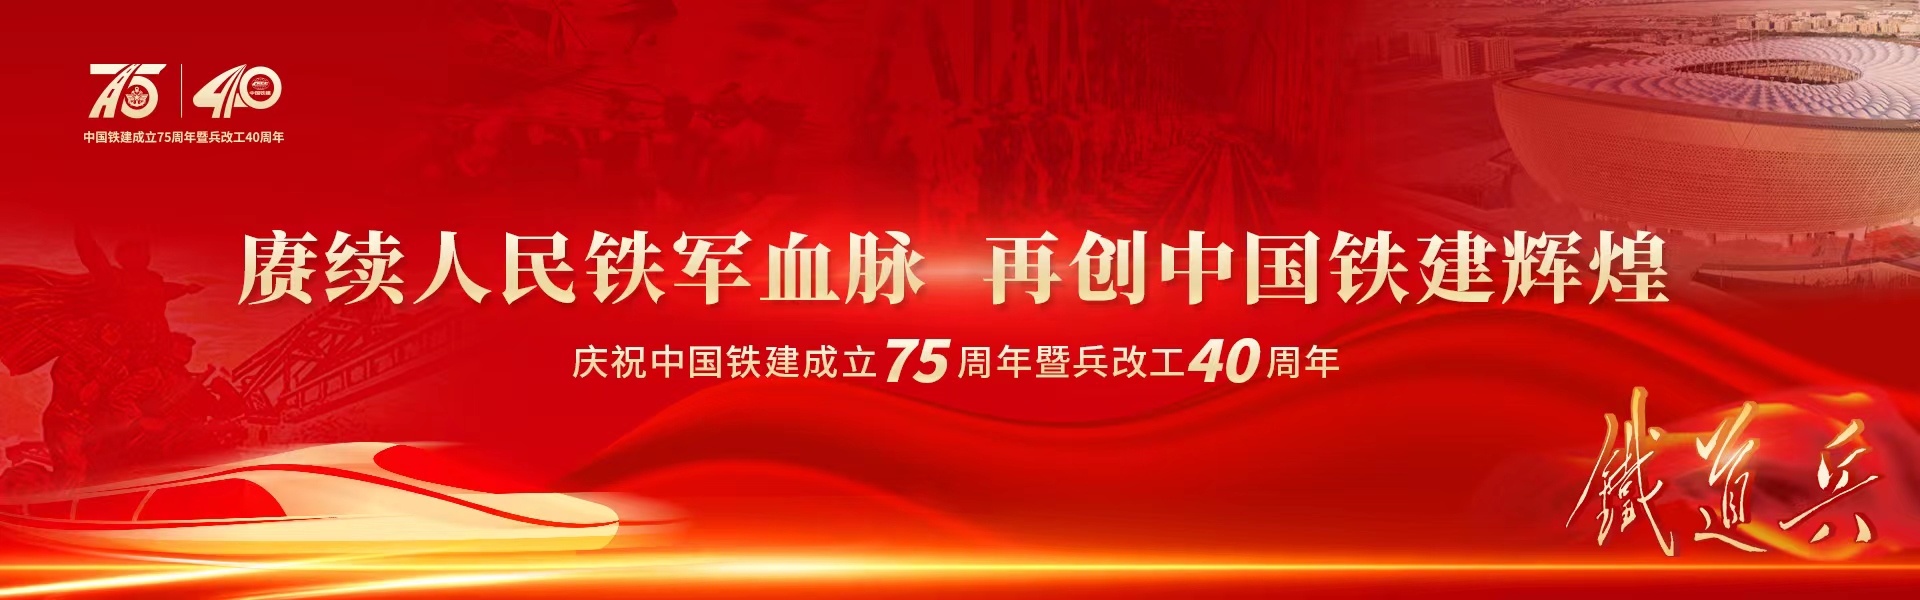 中国铁建成立75周年暨兵改工40周年